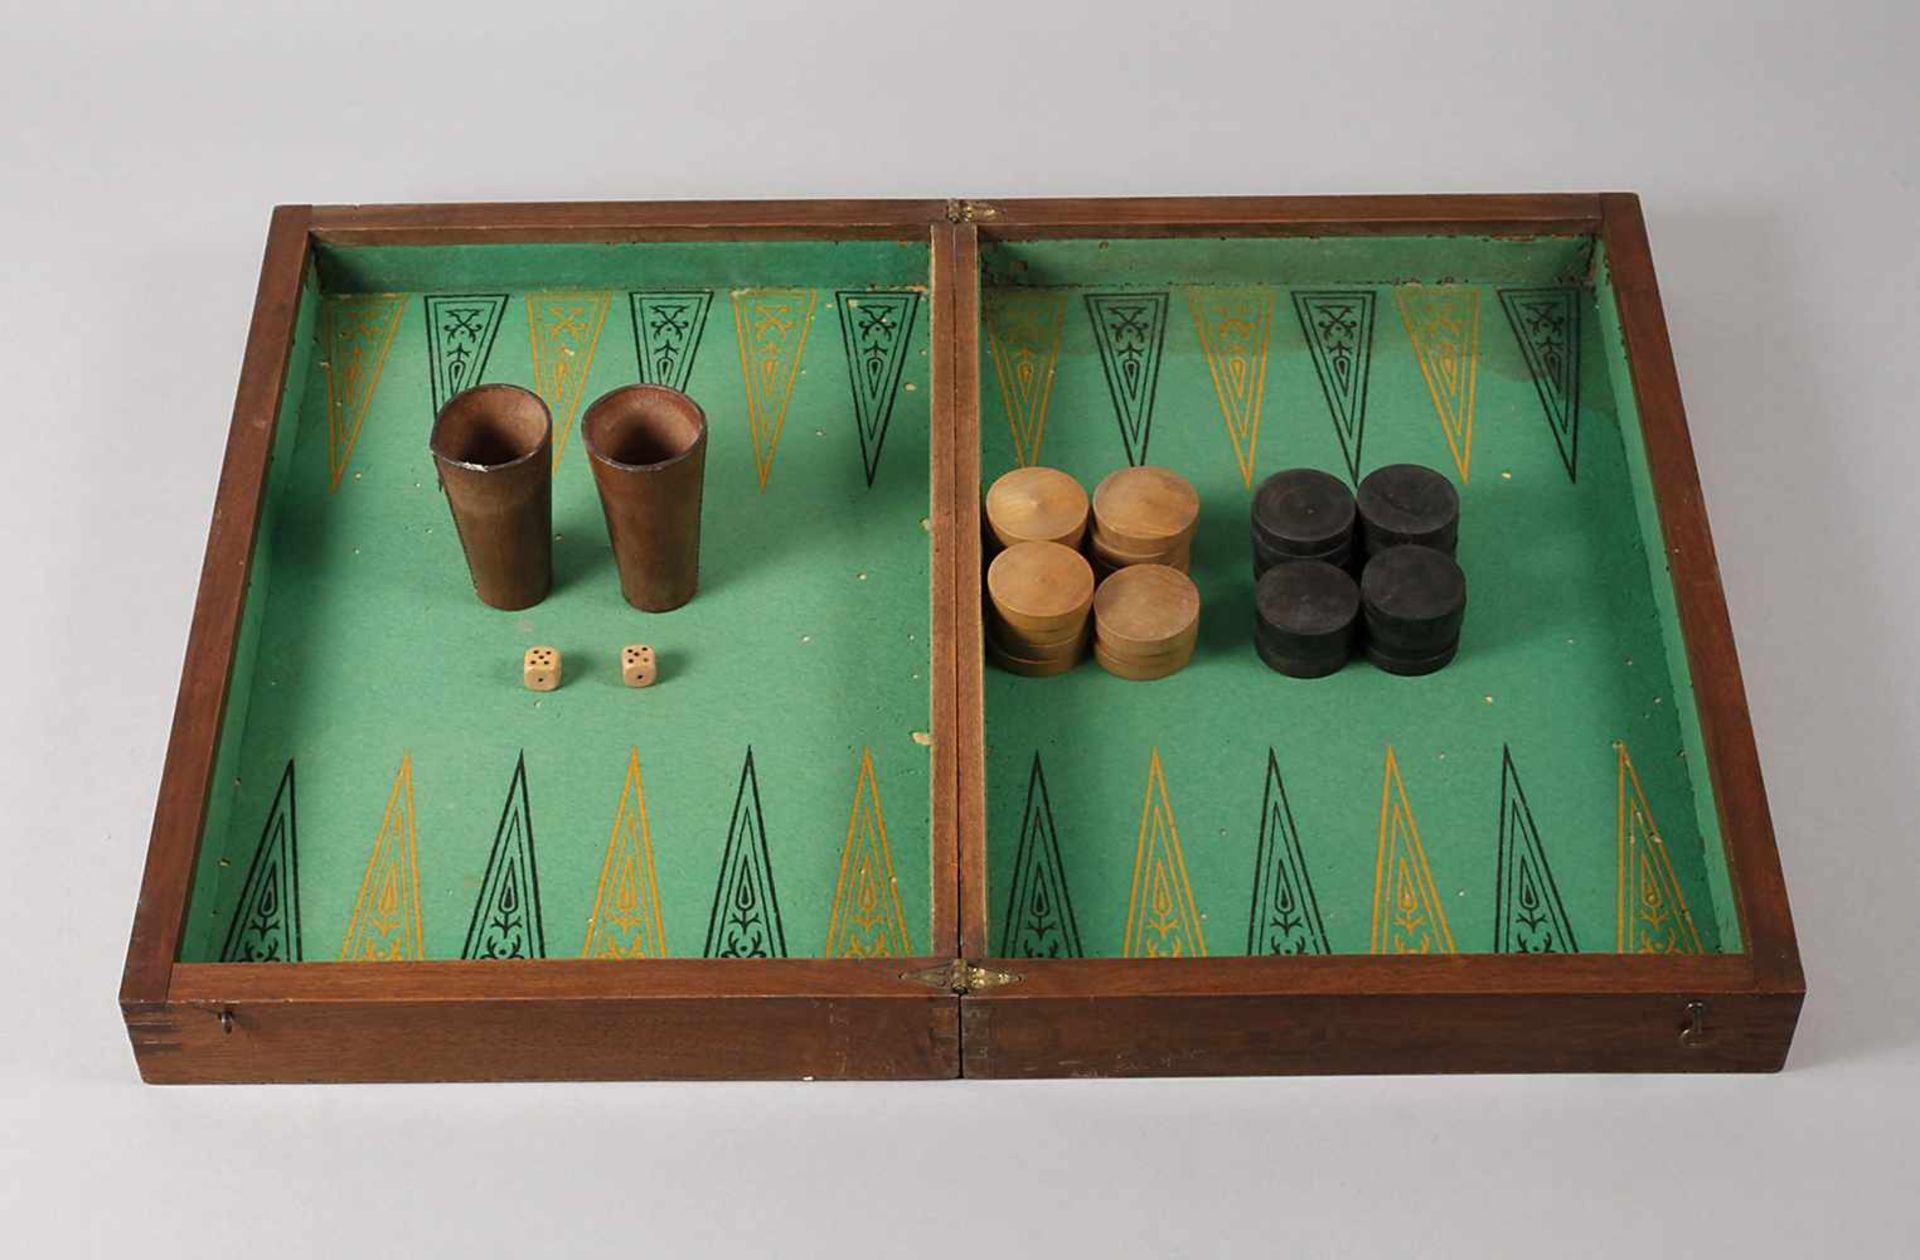 Backgammon wohl England, um 1890, ungemarkt, nussbaumfurnierter Korpus, schachbrettartig